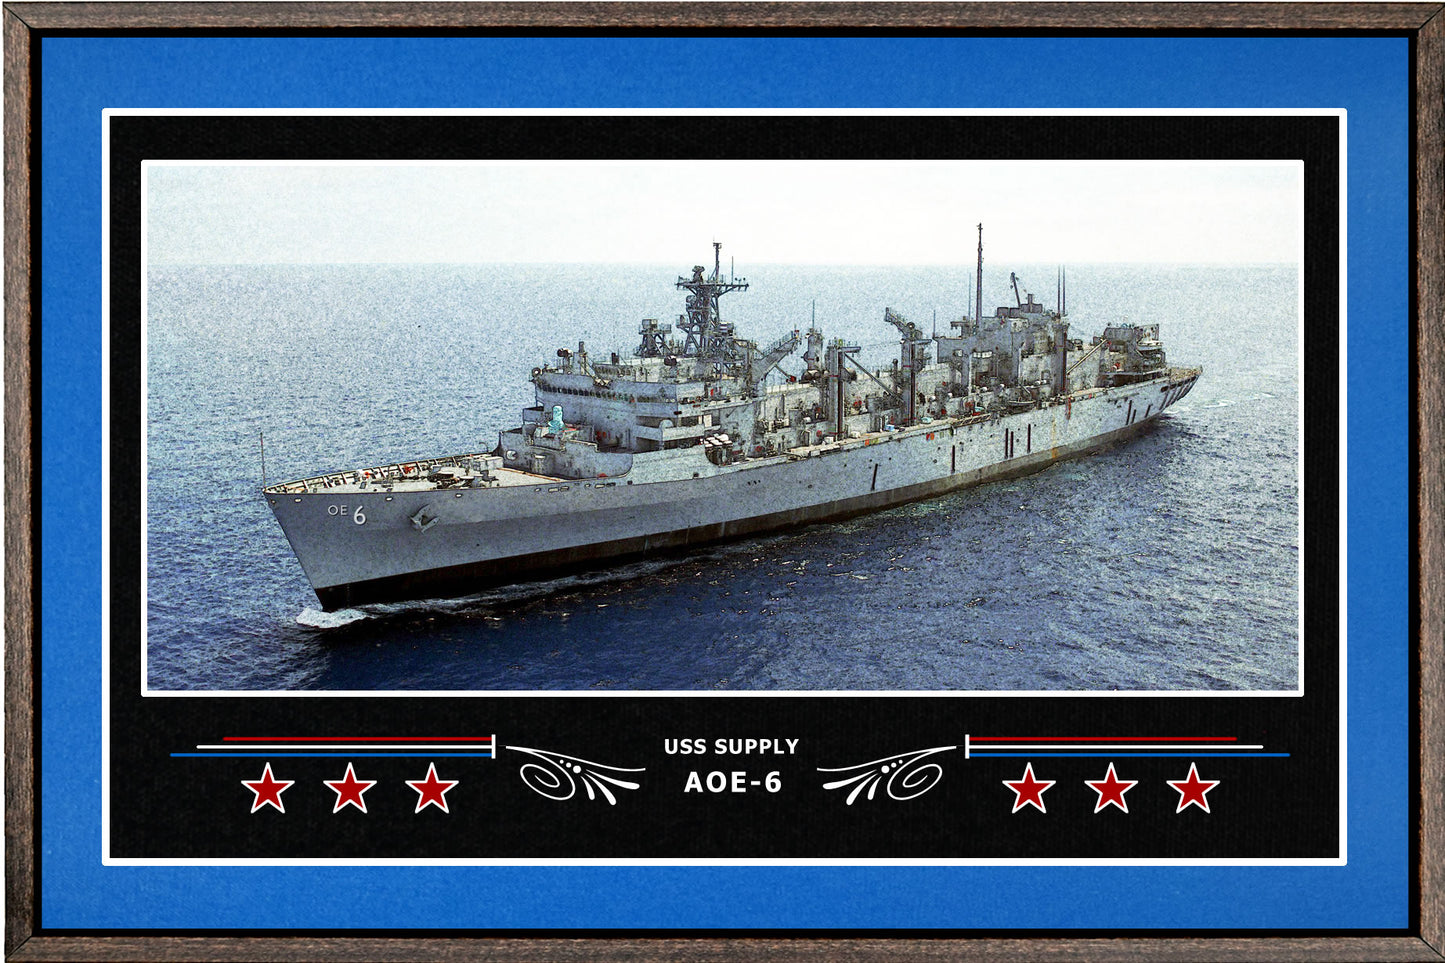 USS SUPPLY AOE 6 BOX FRAMED CANVAS ART BLUE